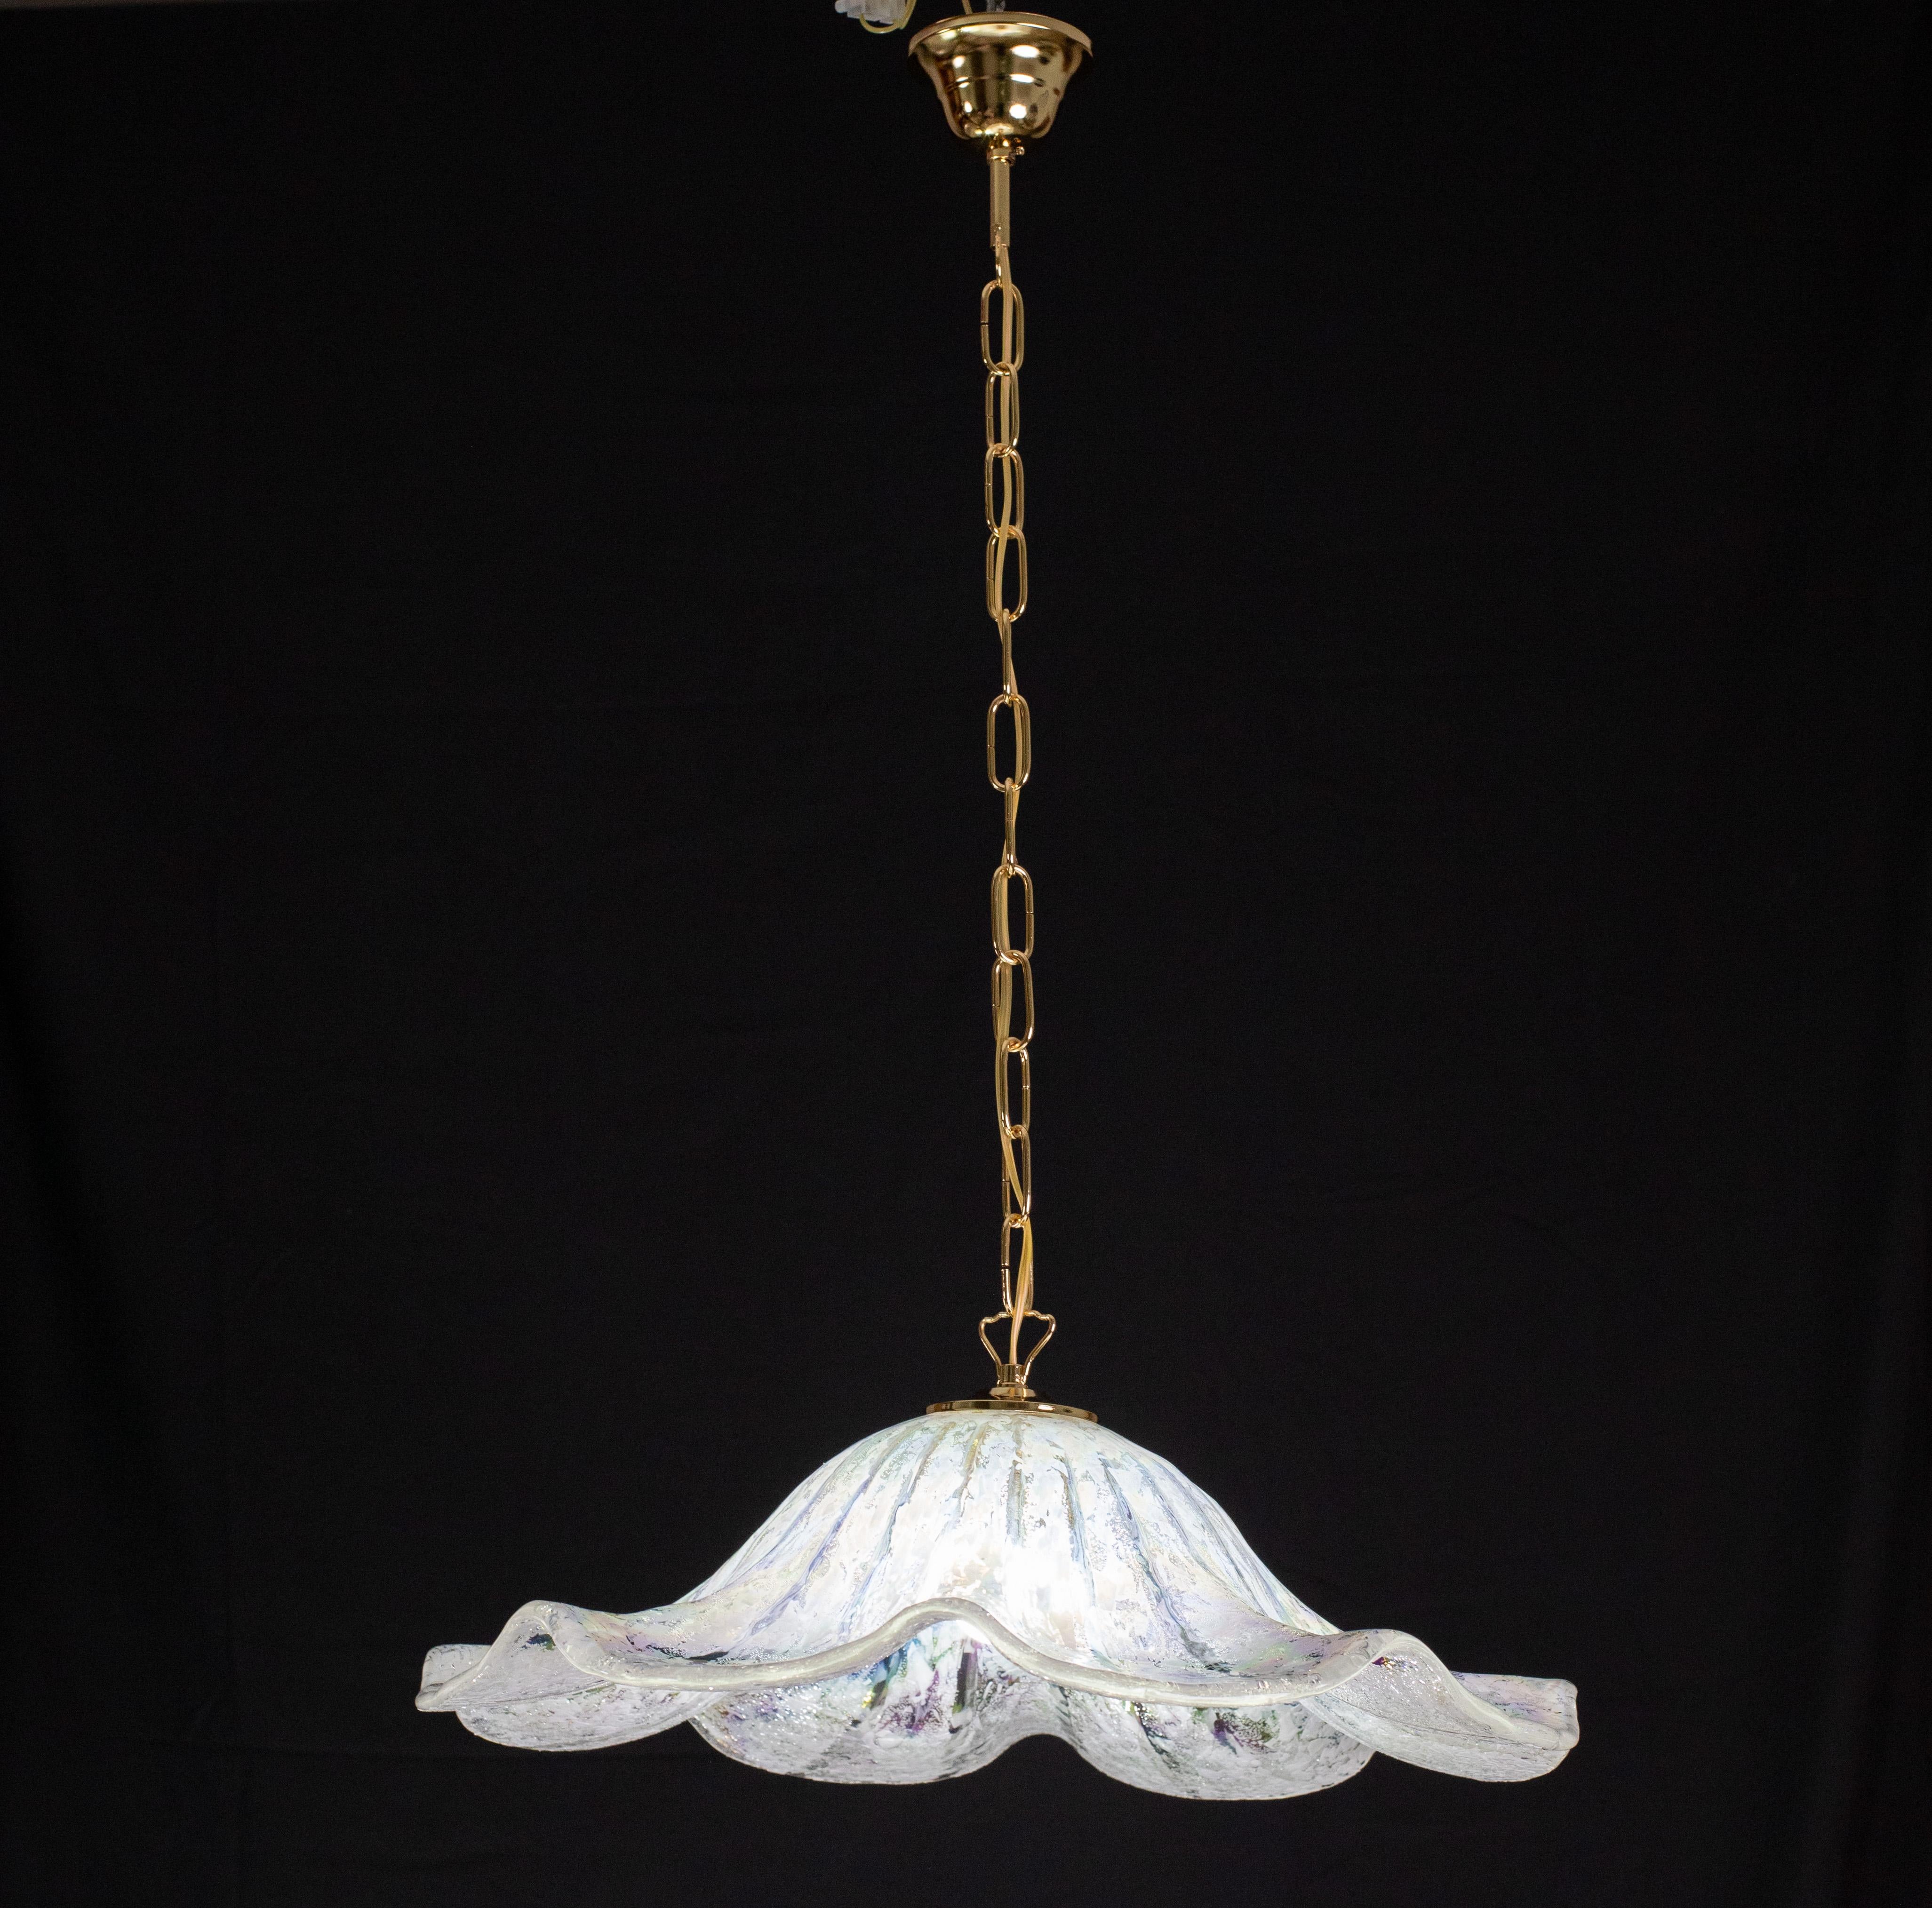 Wunderschöner Vintage-Kronleuchter aus Murano aus mundgeblasenem Perlenglas mit mehrfarbigem Regenbogenglas.

Das Glas hat die Form einer Scheibe oder eines Hutes.

Der Kronleuchter ist mit einem e27-Leuchtmittel bestückt, die Kette und die Rosette